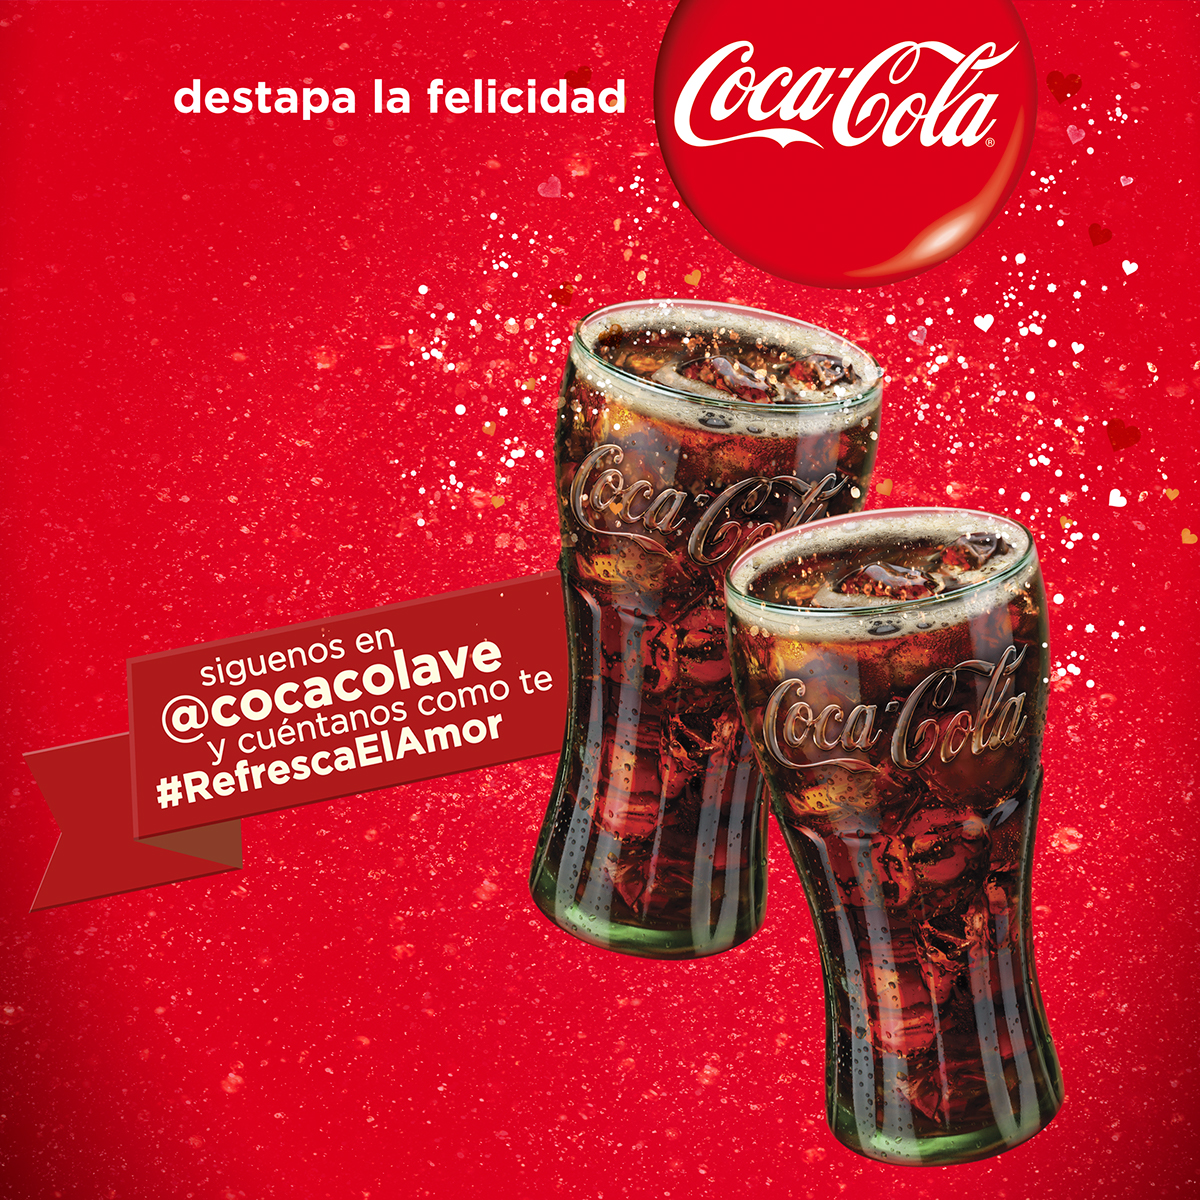 coke cocacola Love ogilvy amor caracas venezuela